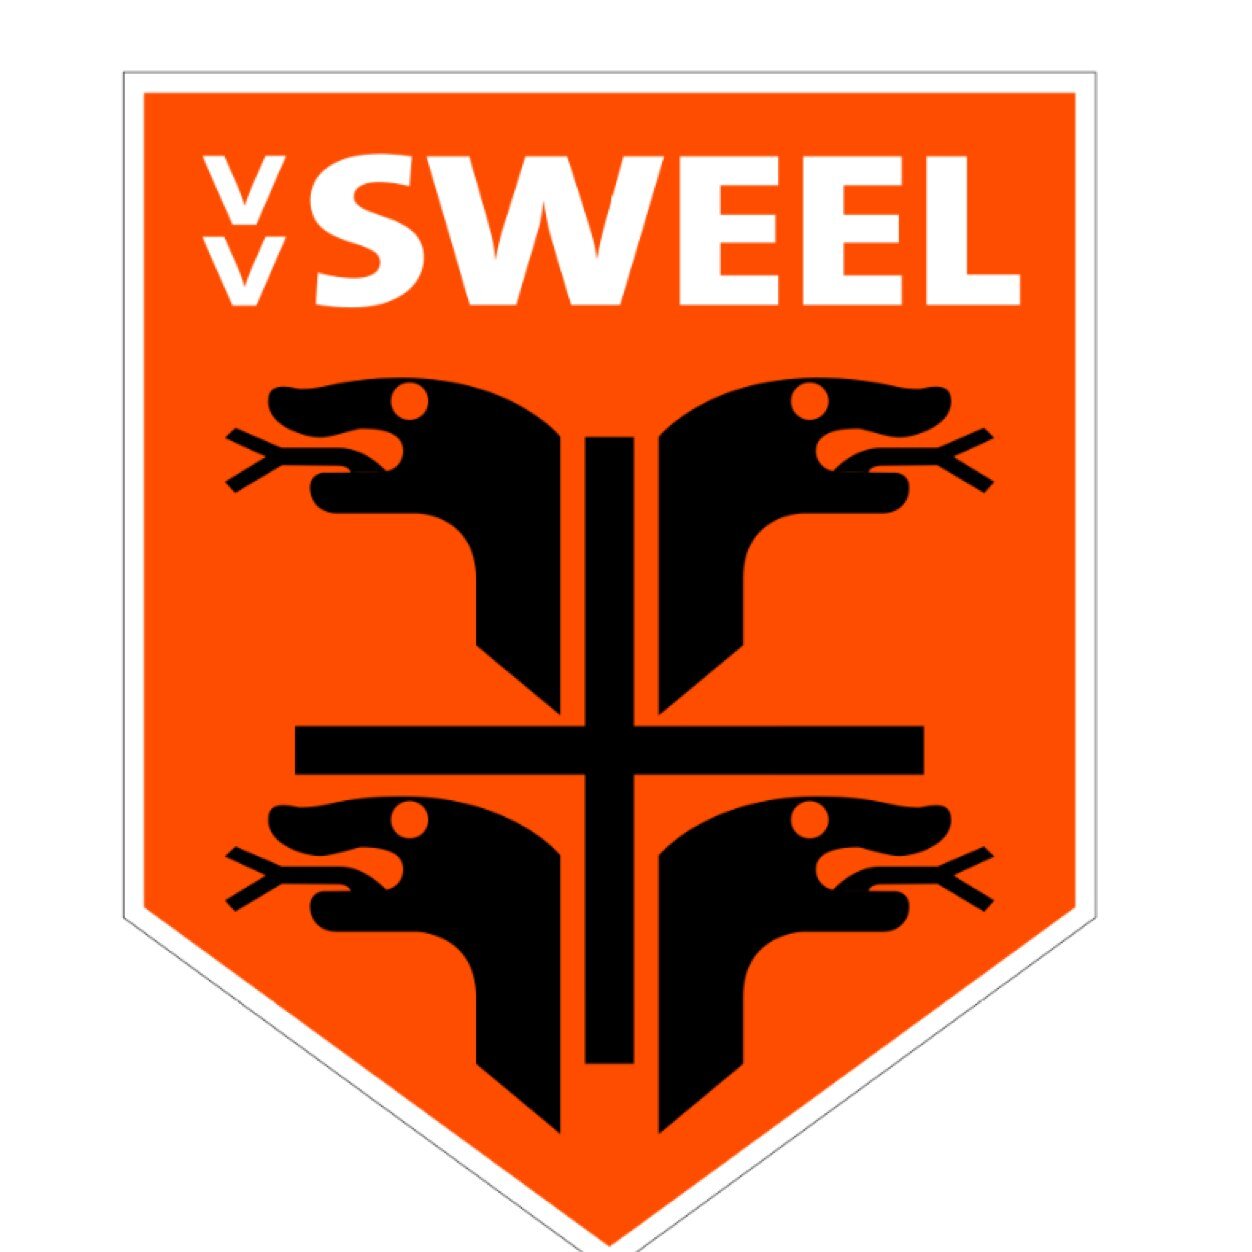 VV Sweel